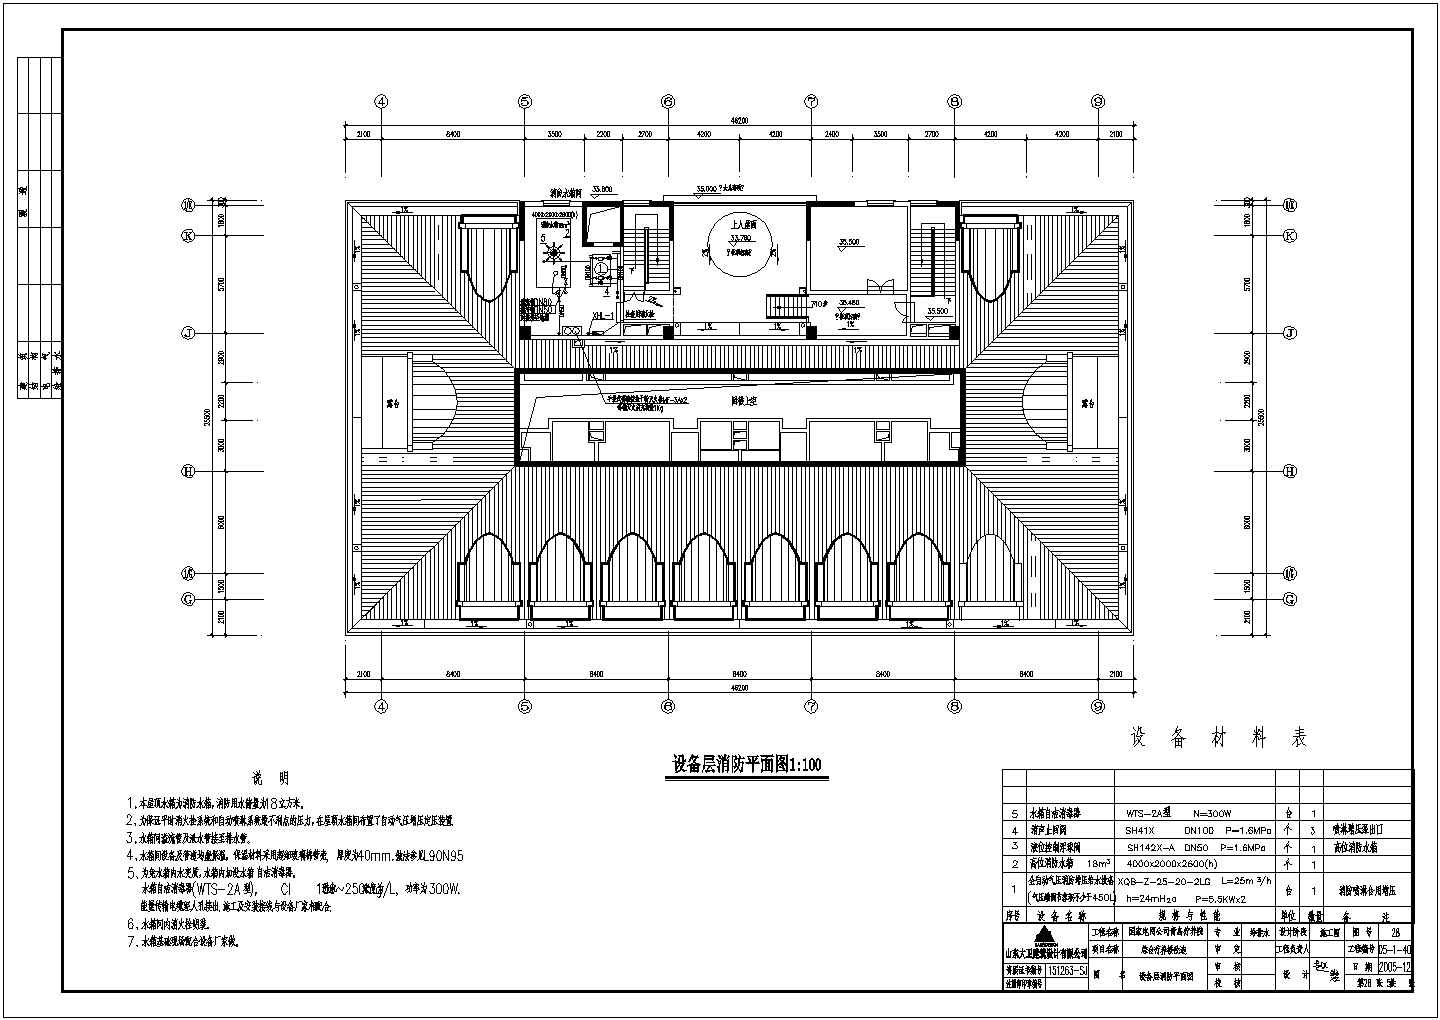 青岛疗养院改造项目给排水及消防工程施工图